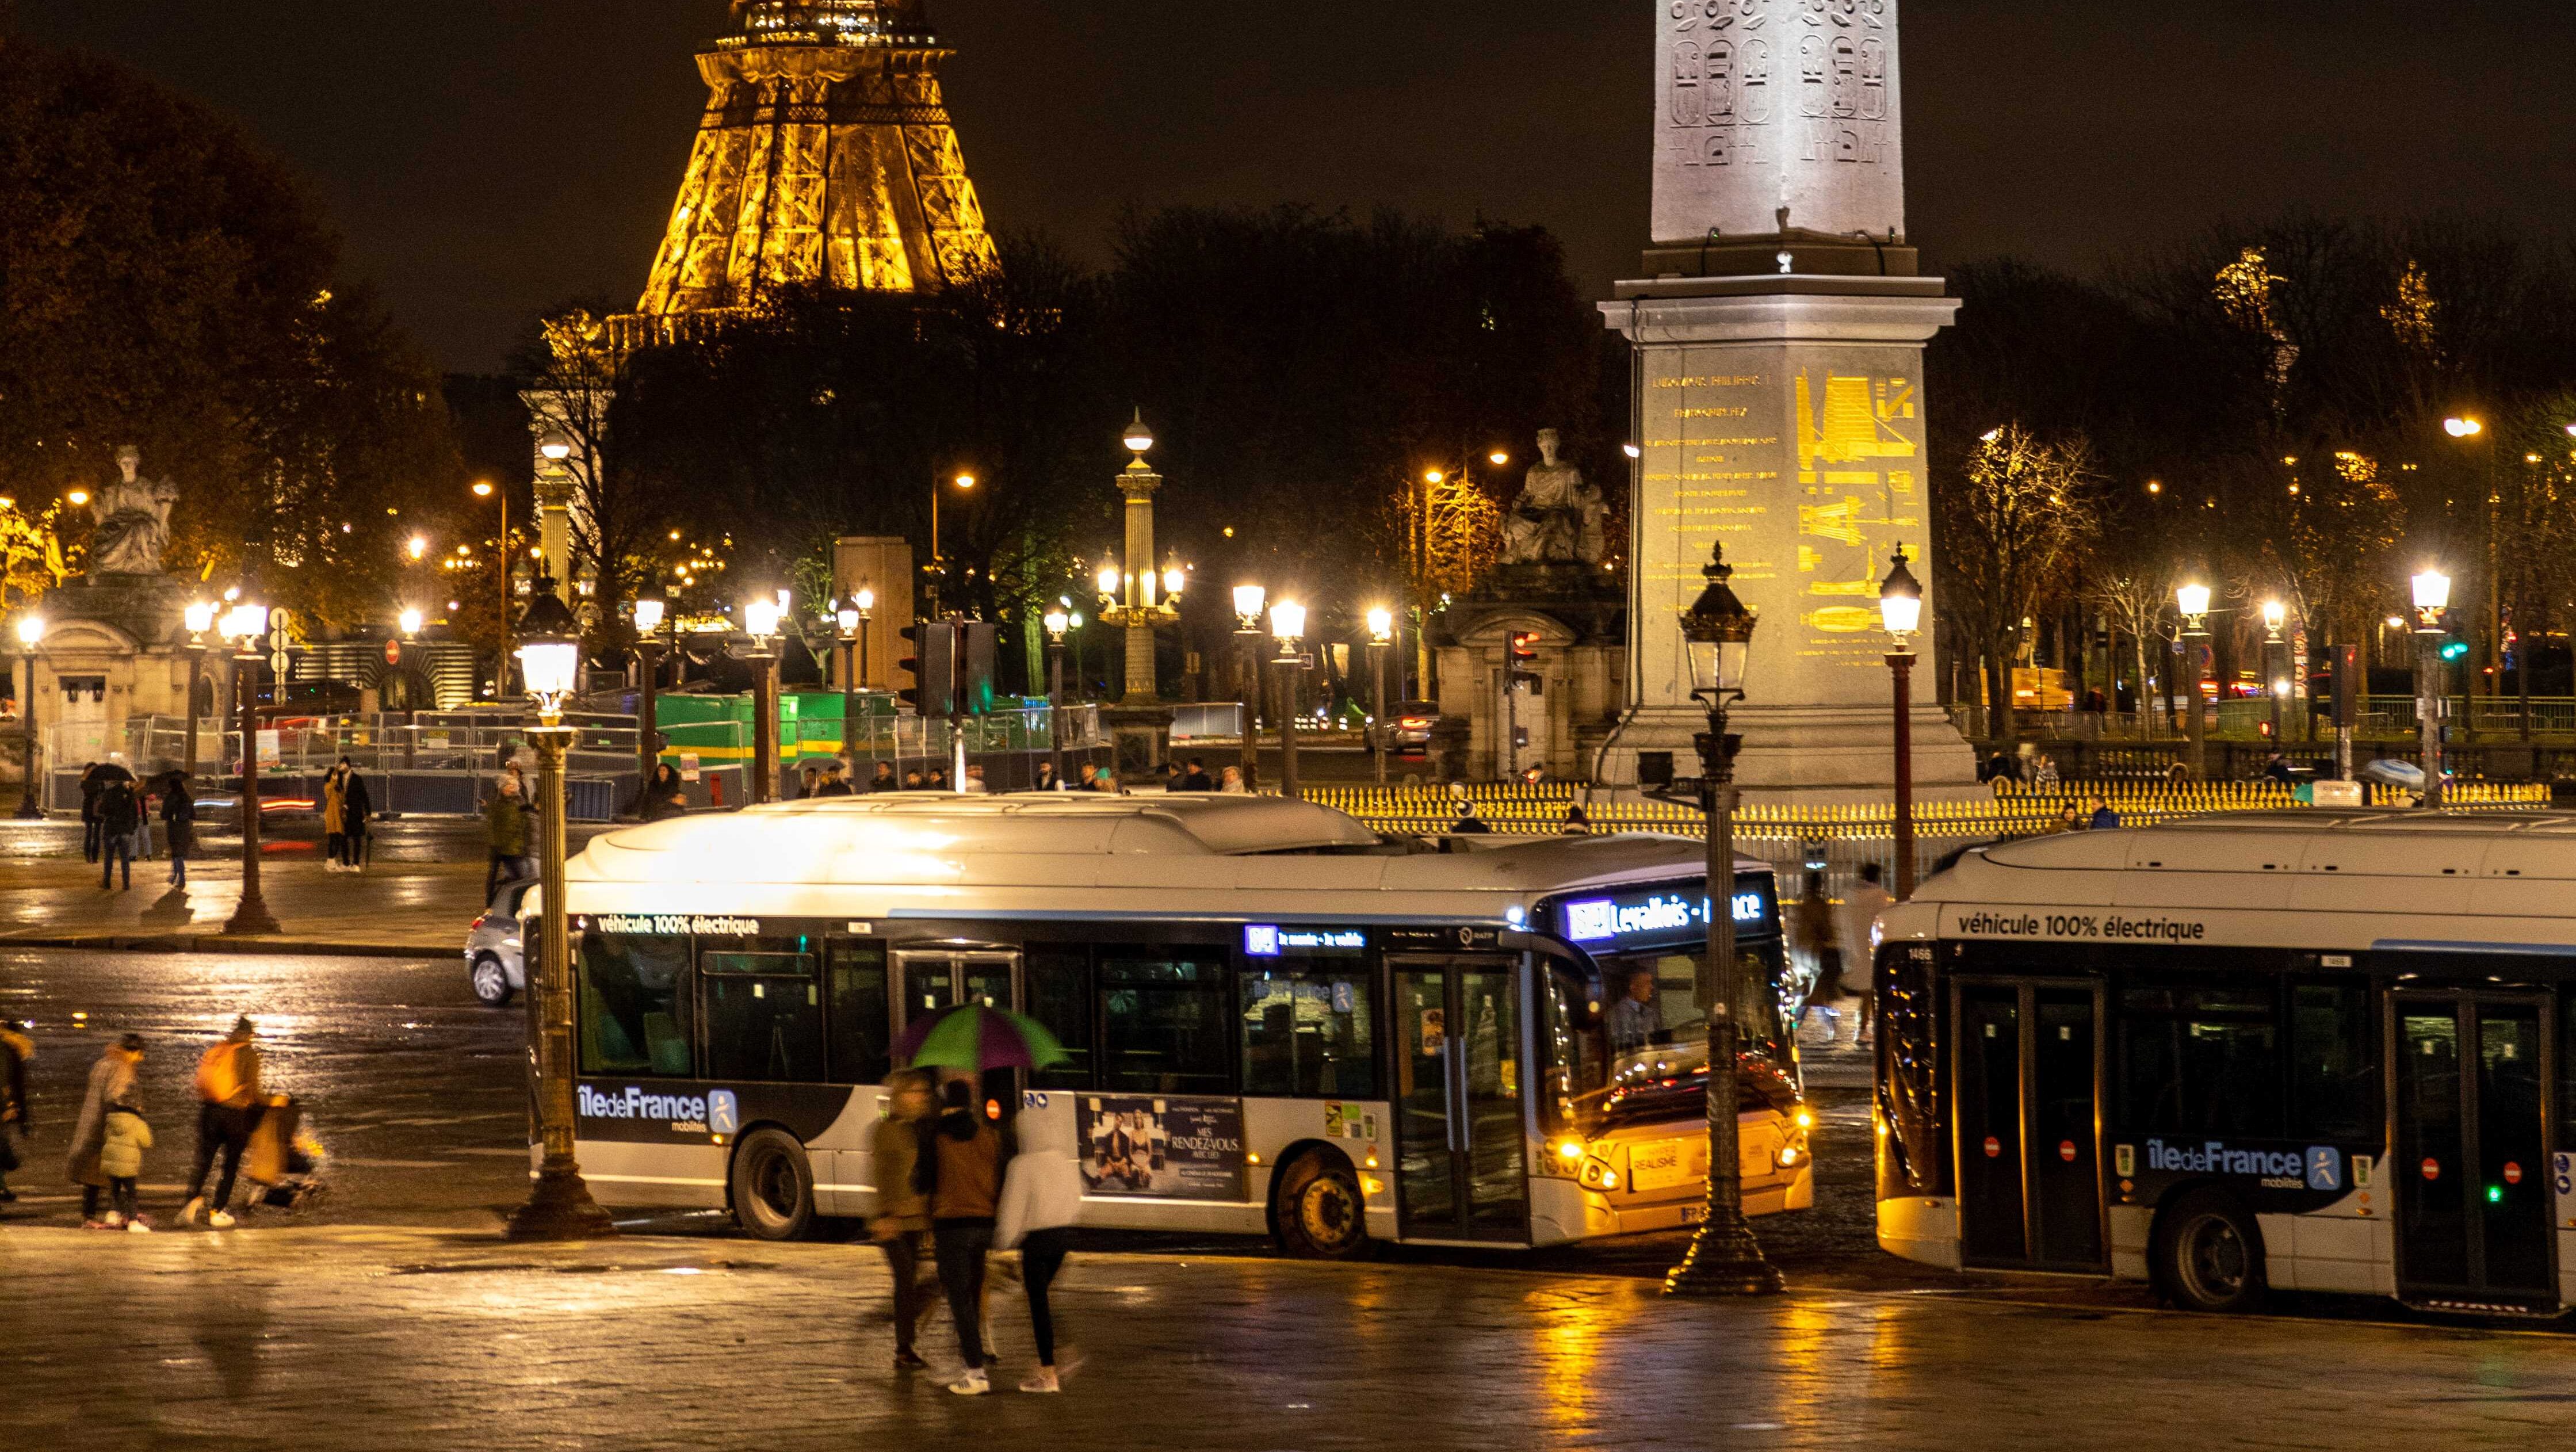 Busses at Place de la Concorde in Paris.